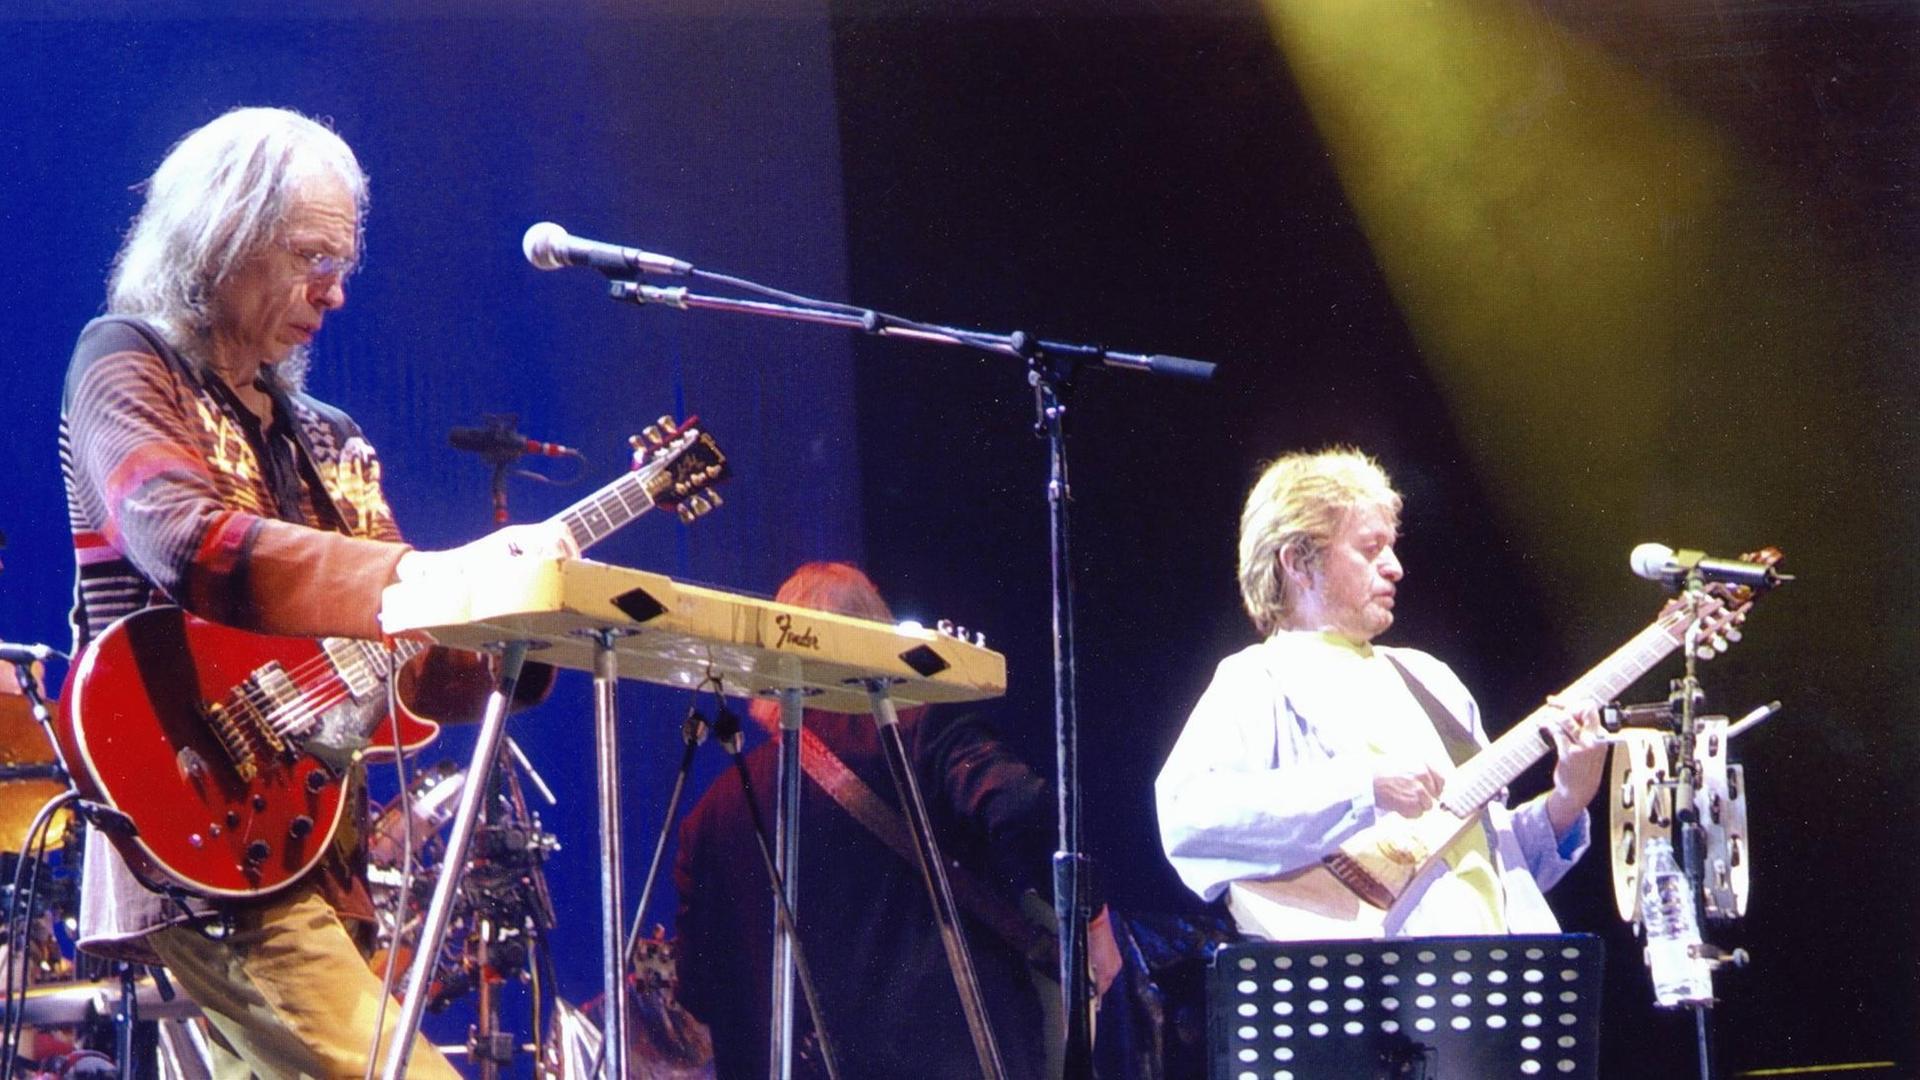 Zwei Männer stehen auf einer Bühne. Ein Mann spielt Gitarre, ein Mann spielt Bass.